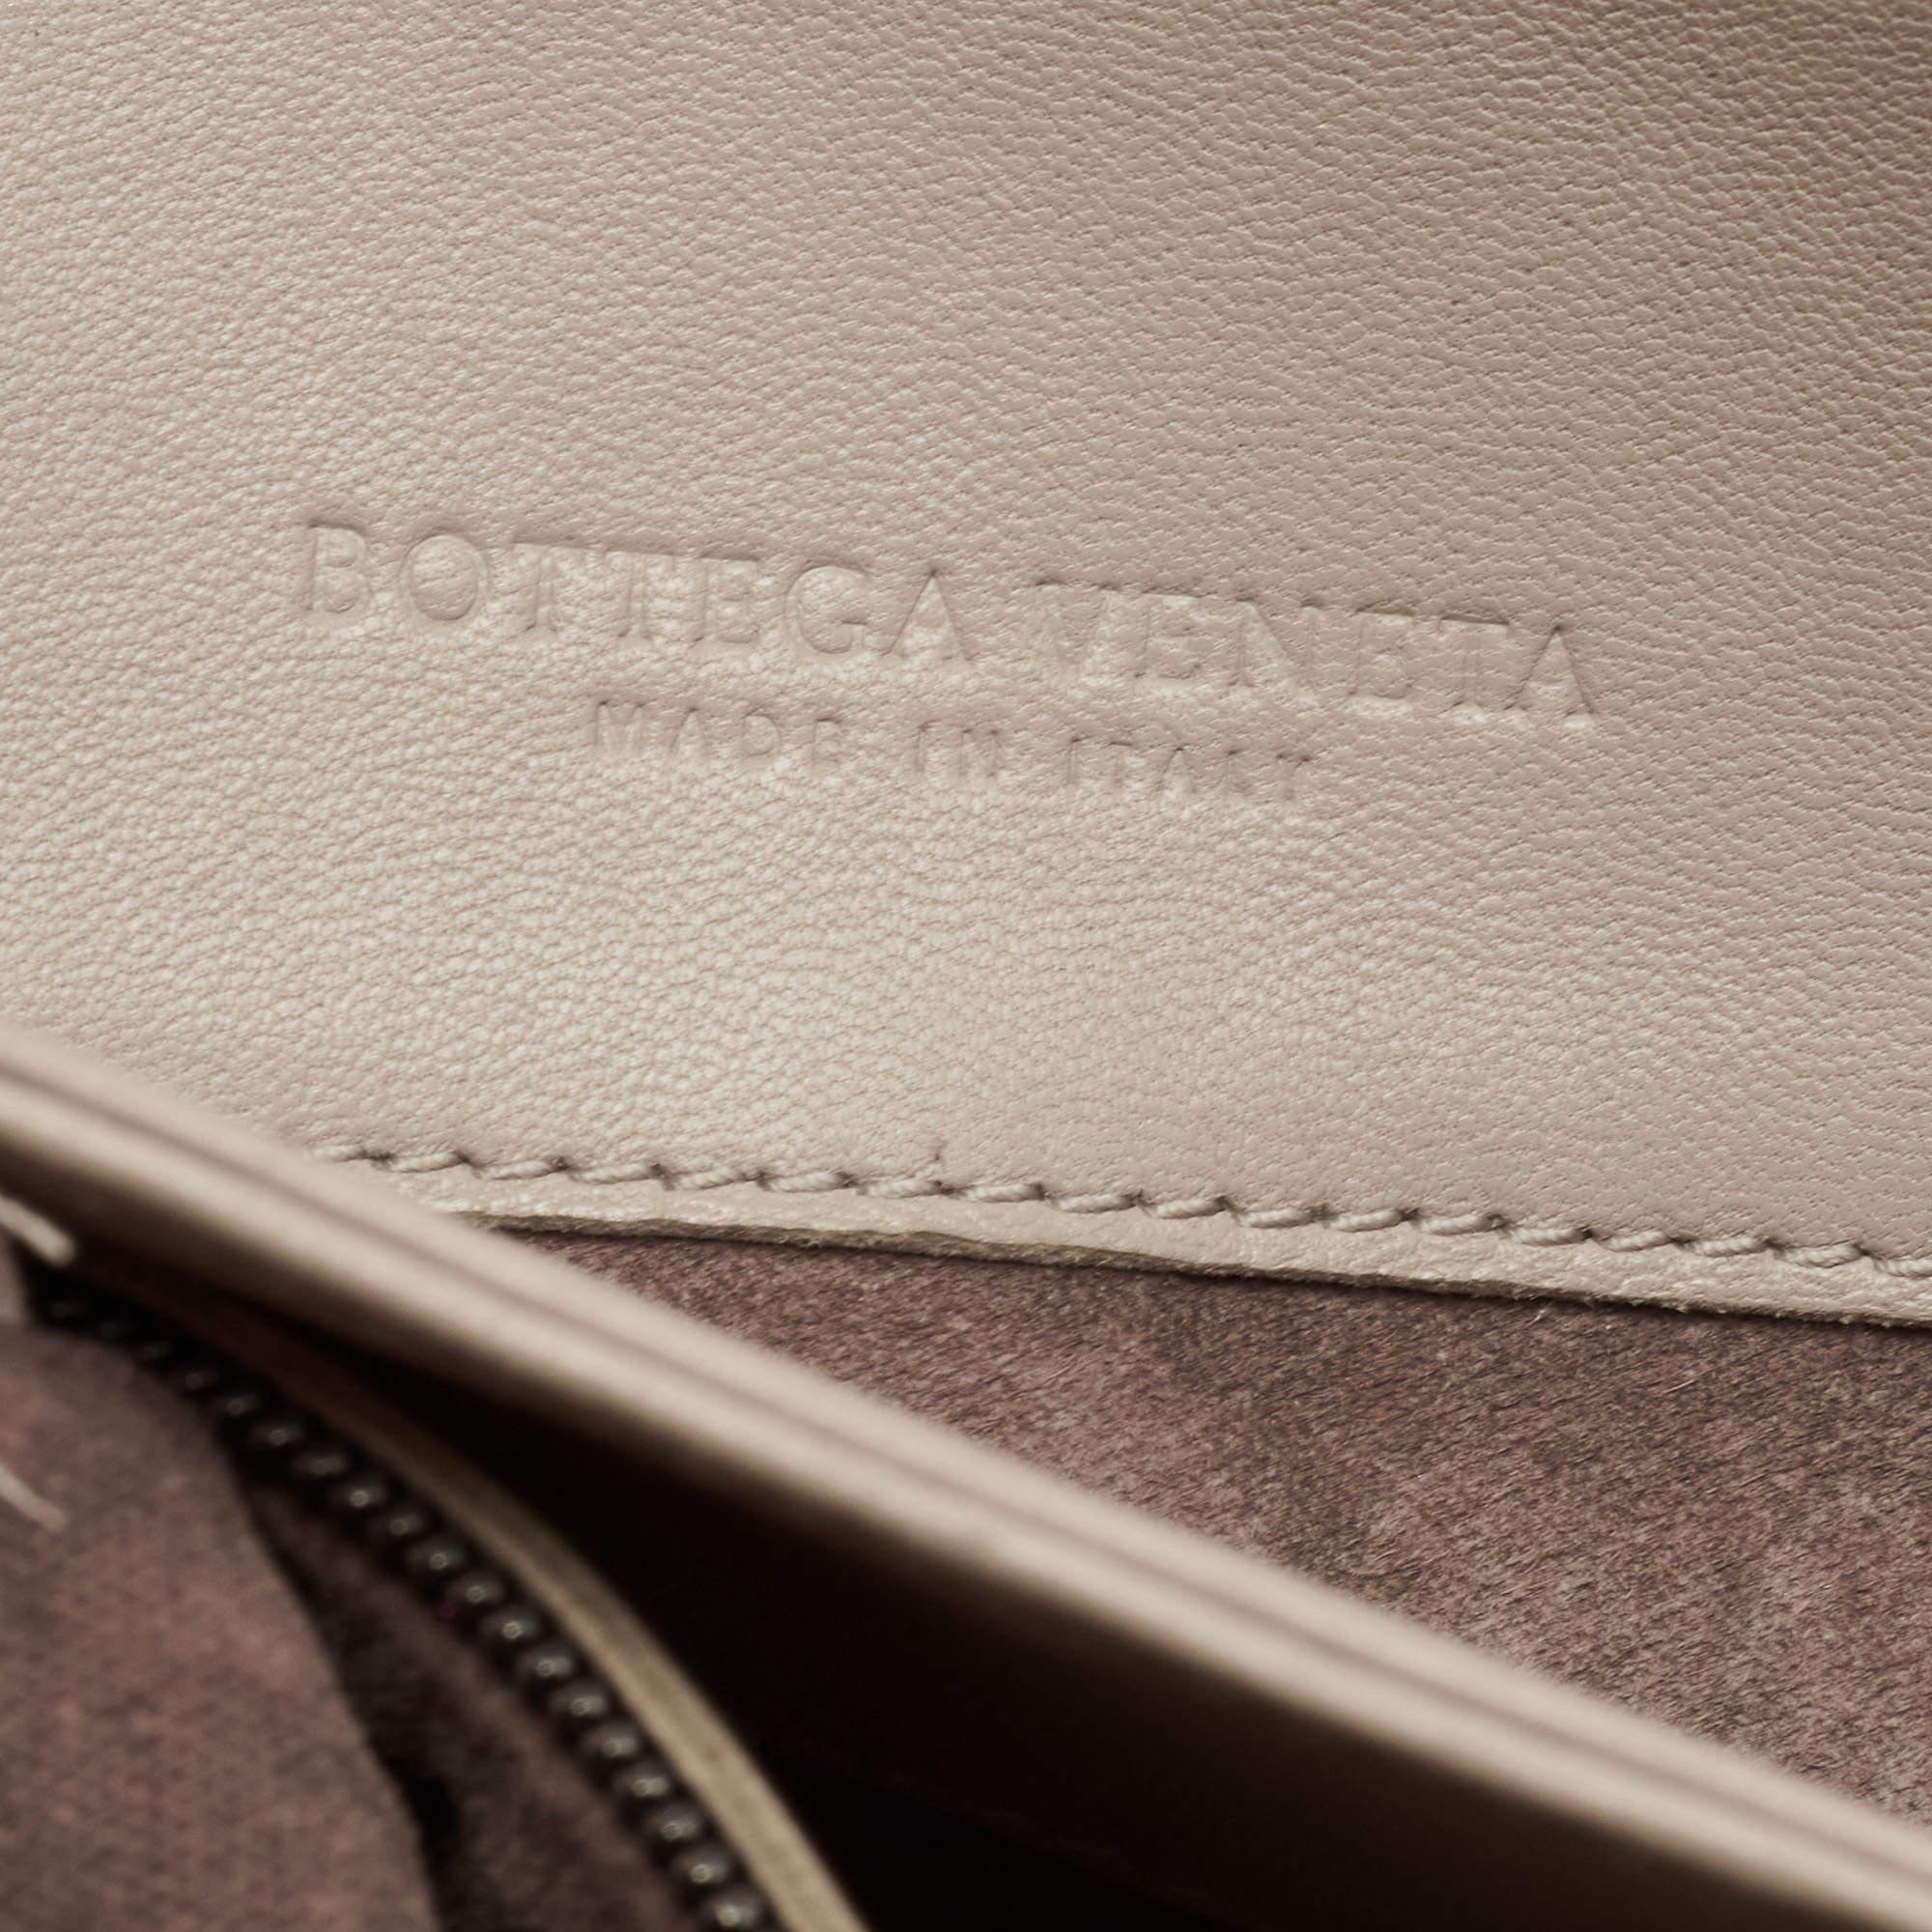 Bottega Veneta Beige Intrecciato Leather Olimpia Top Handle Bag 9